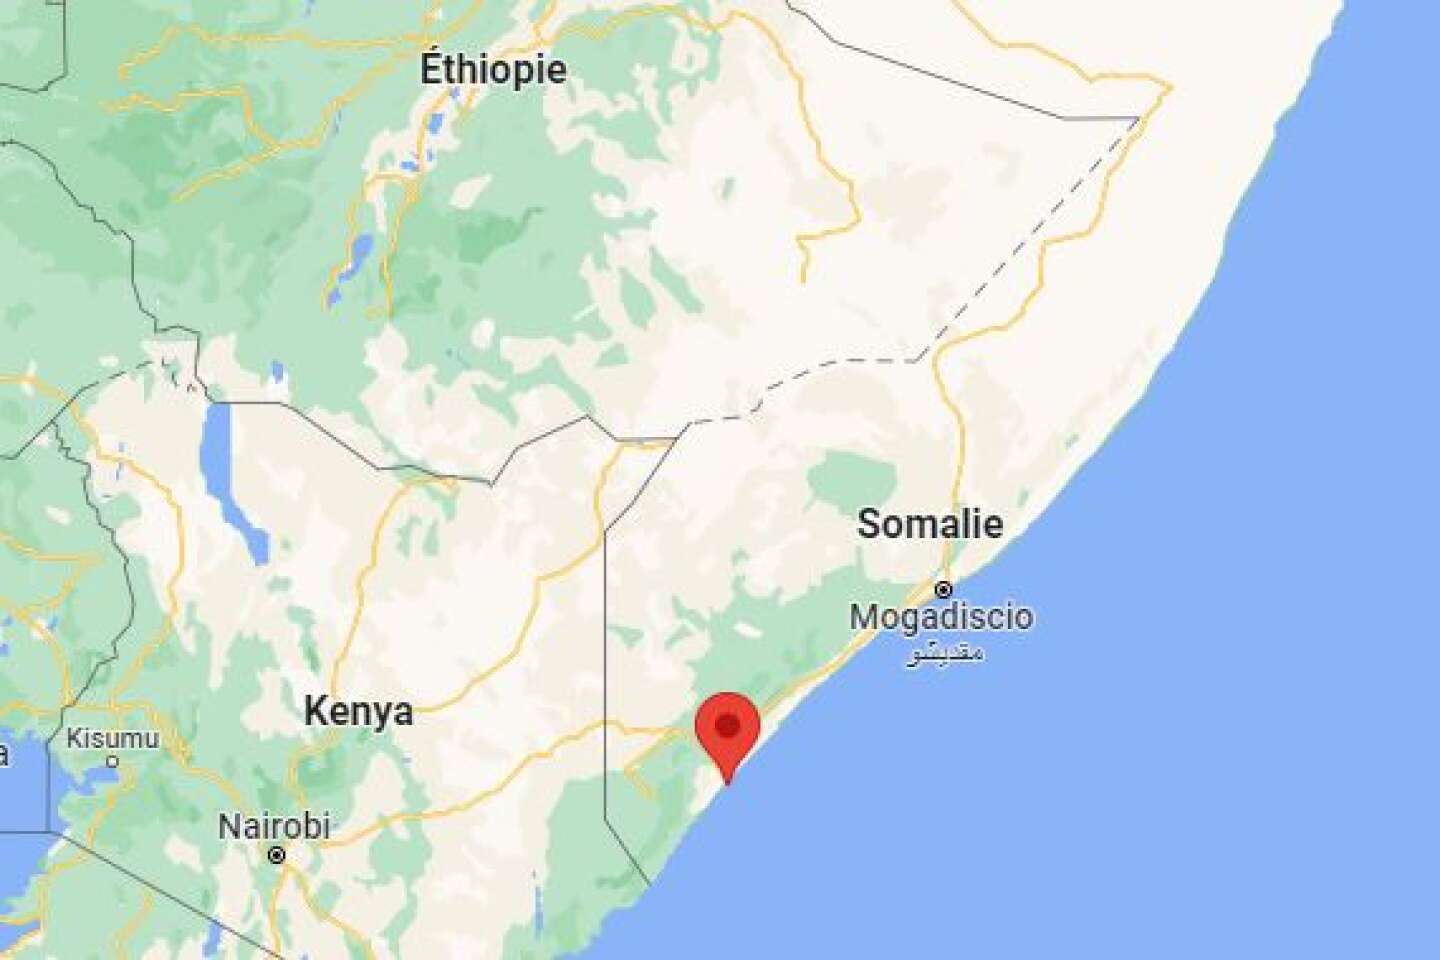 Somalie : une nouvelle attaque des Chabab dans un hôtel fait neuf morts